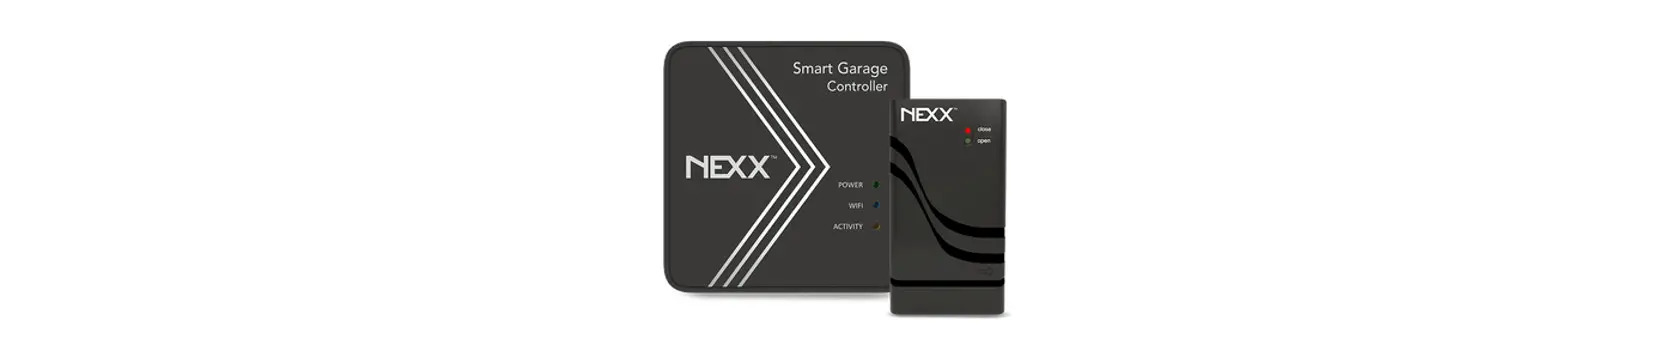 NXG-200